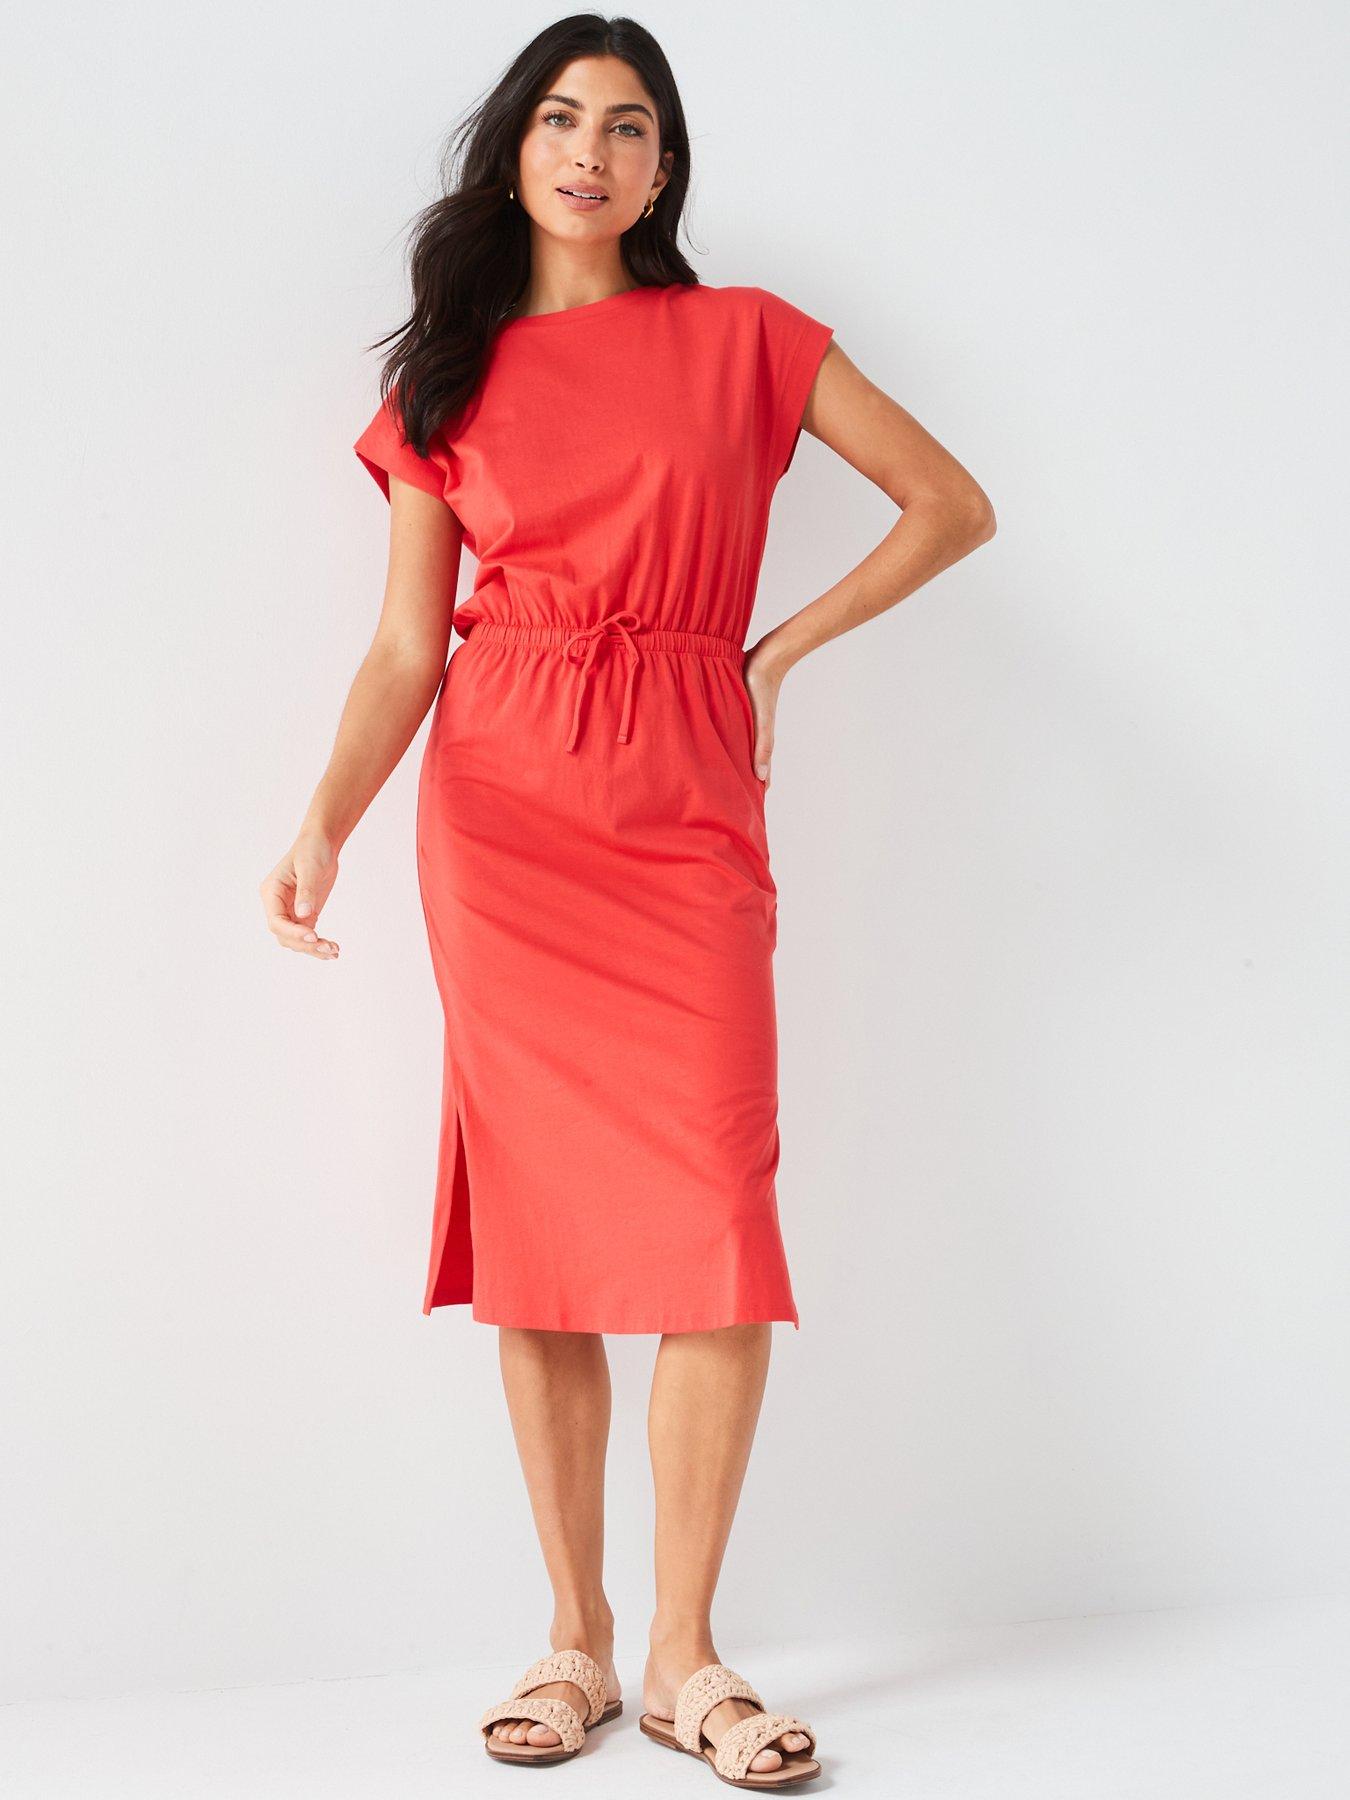 Dresses UK, Buy Women's Dresses Online